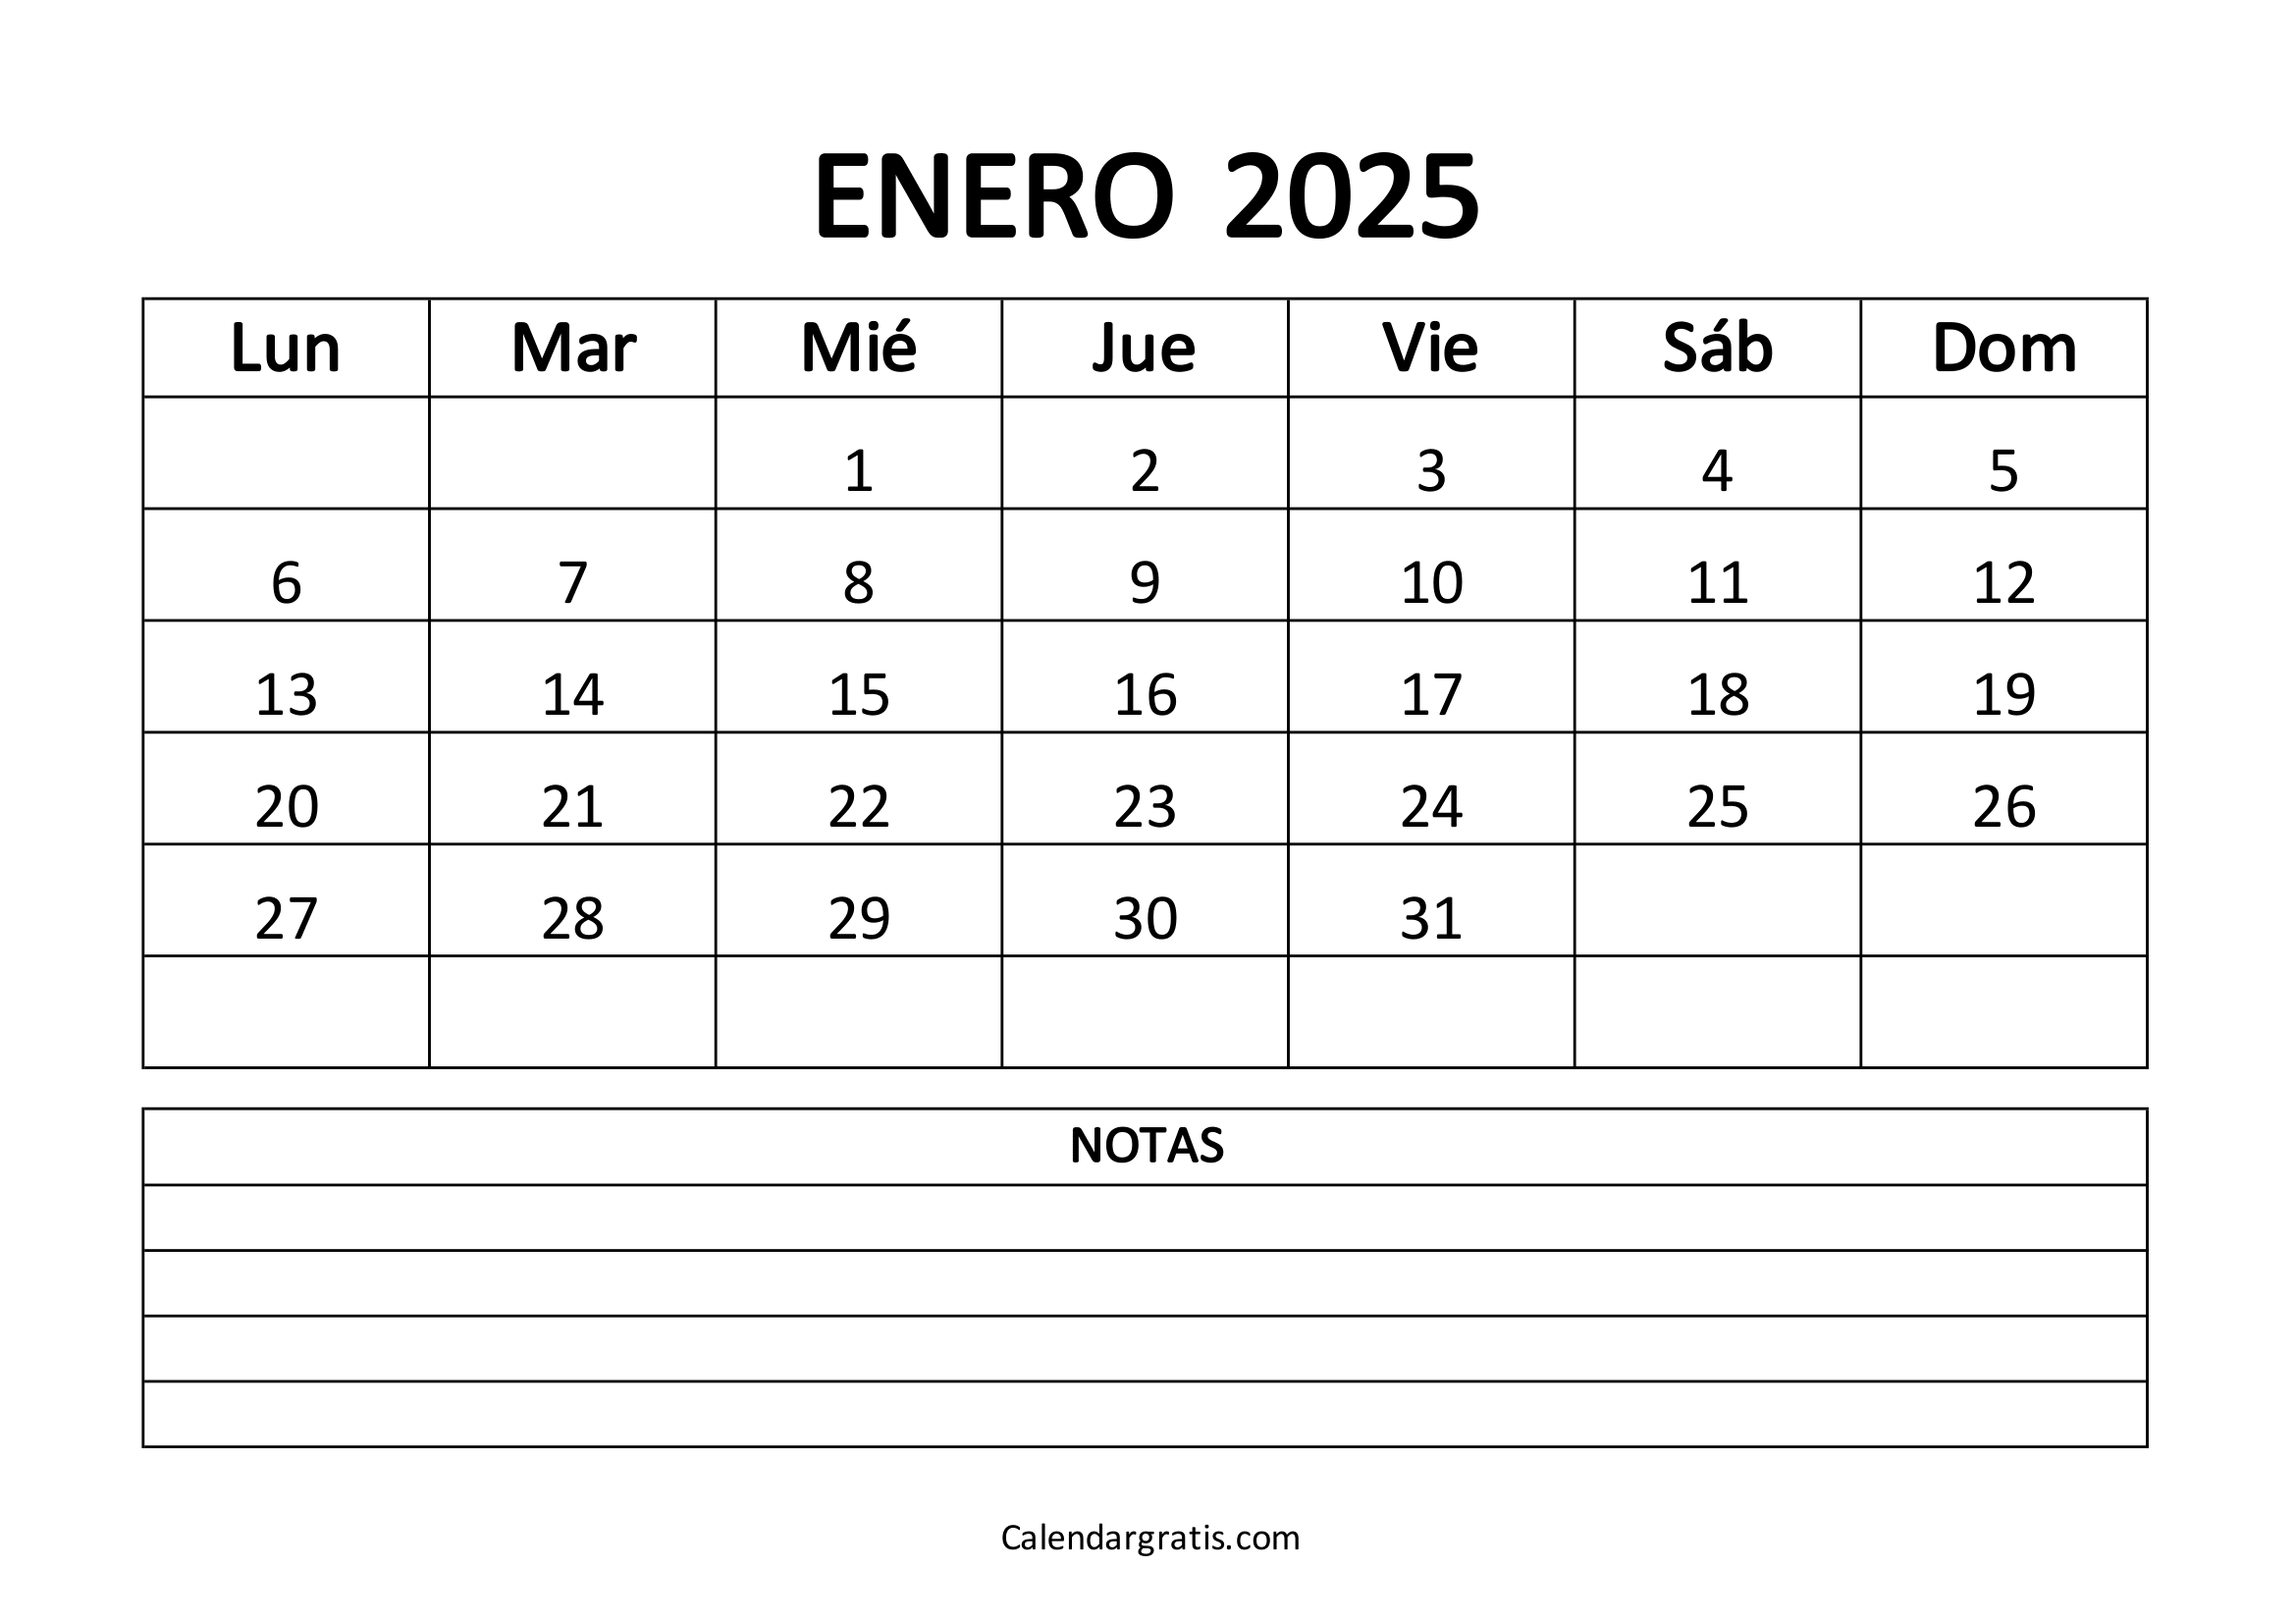 Calendario del mes de enero 2025 para imprimir gratis